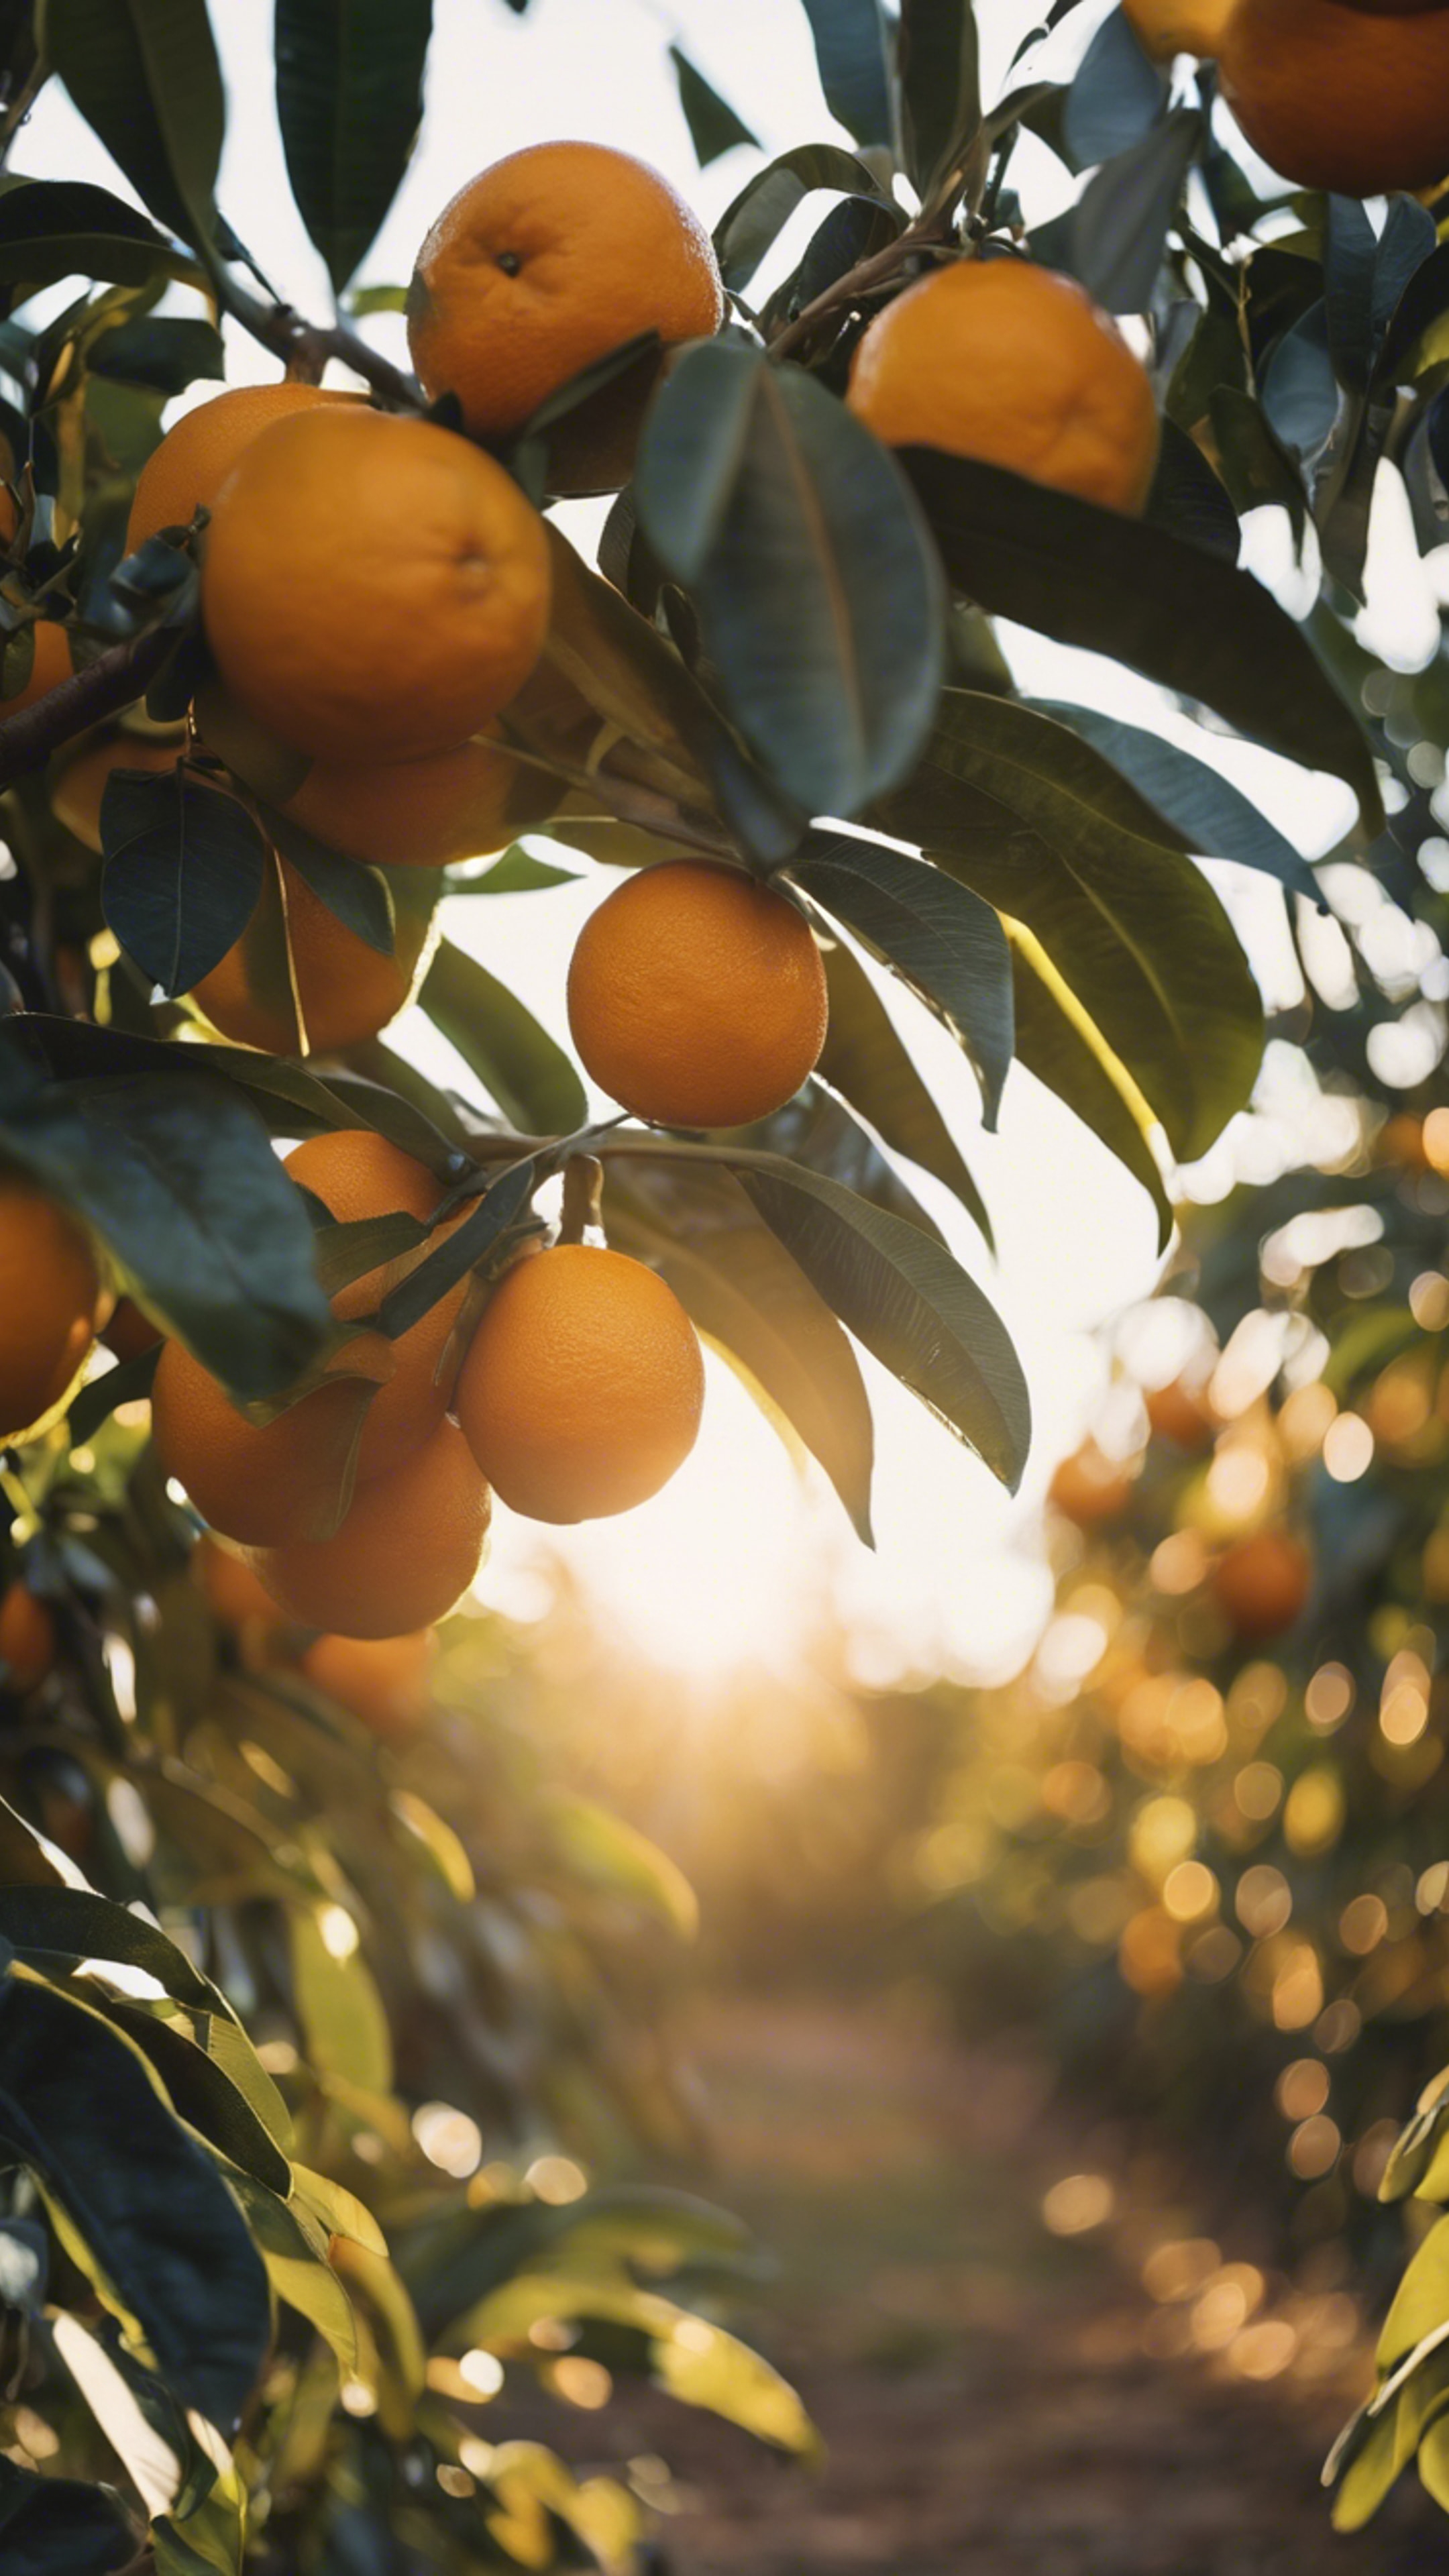 An orange grove in central Florida, with the sun casting a golden hue over ripe oranges ready for harvest. duvar kağıdı[4bbebc31cb8441e2b681]